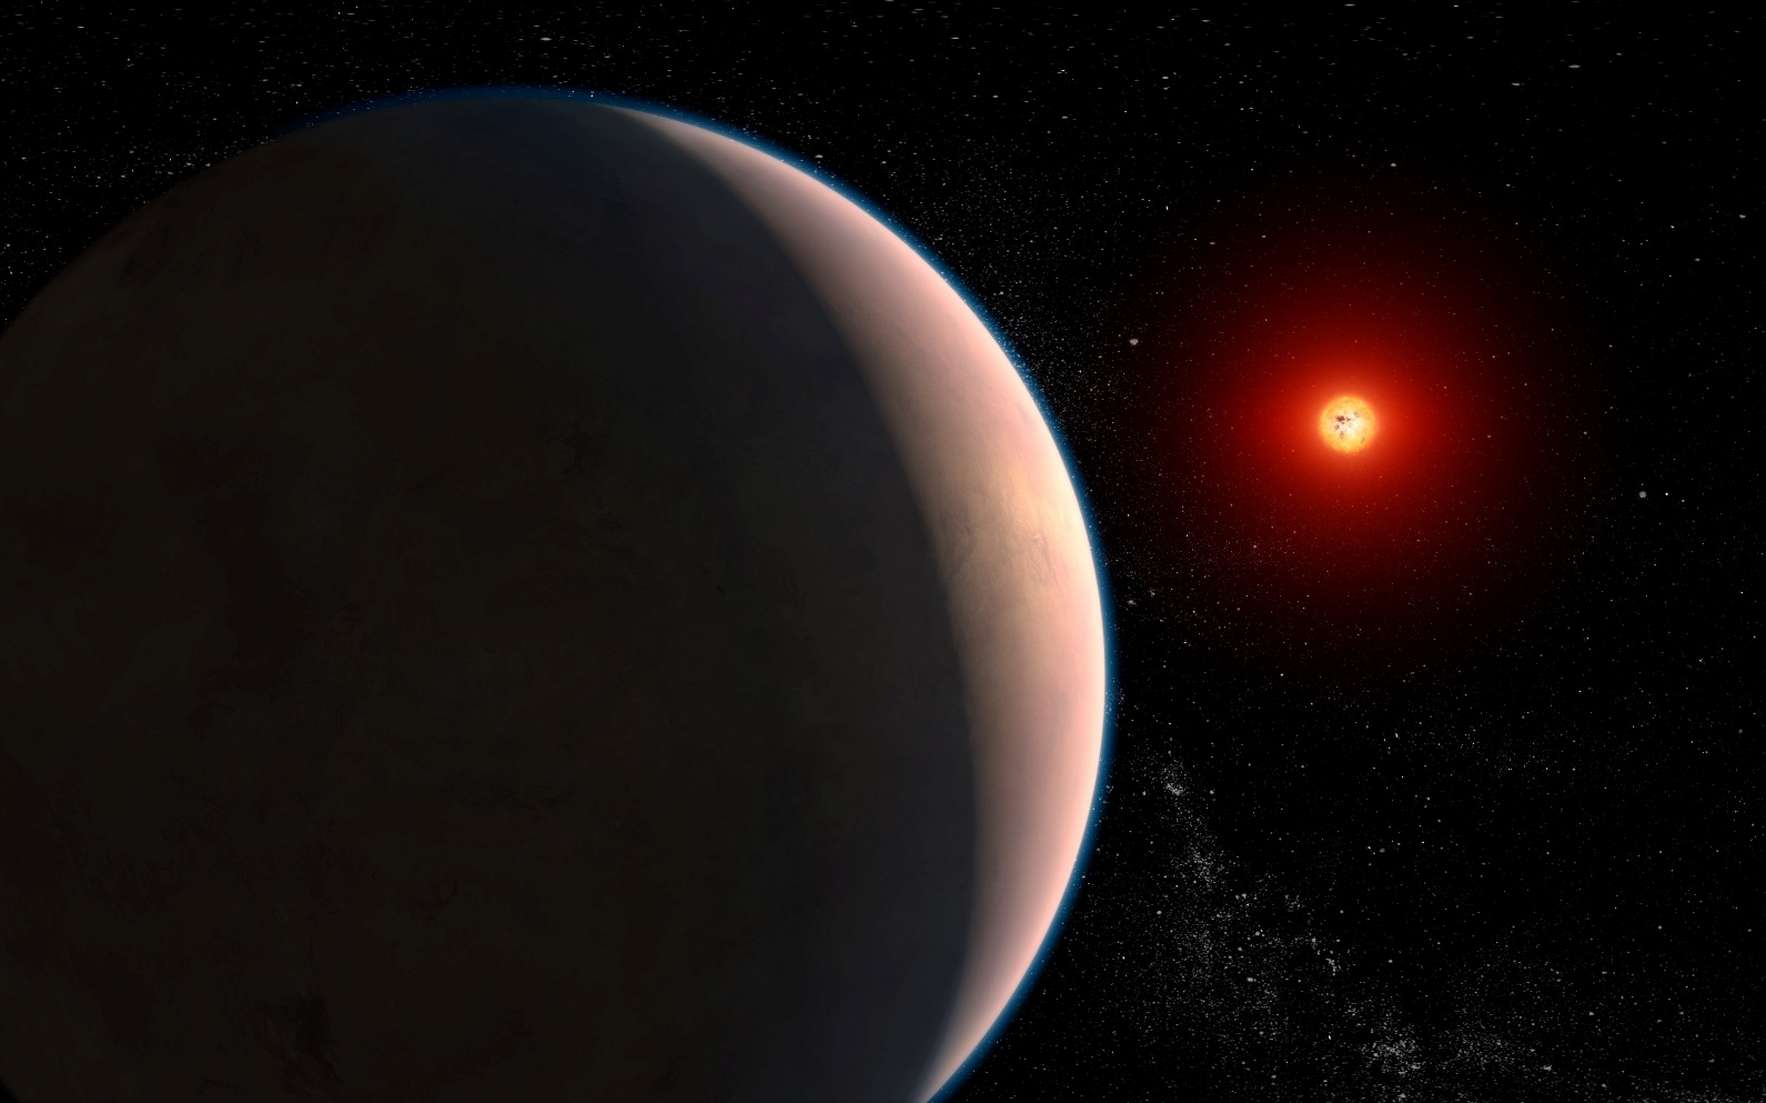 Le télescope James-Webb a détecté de la vapeur d'eau en observant le passage de cette planète devant son étoile !